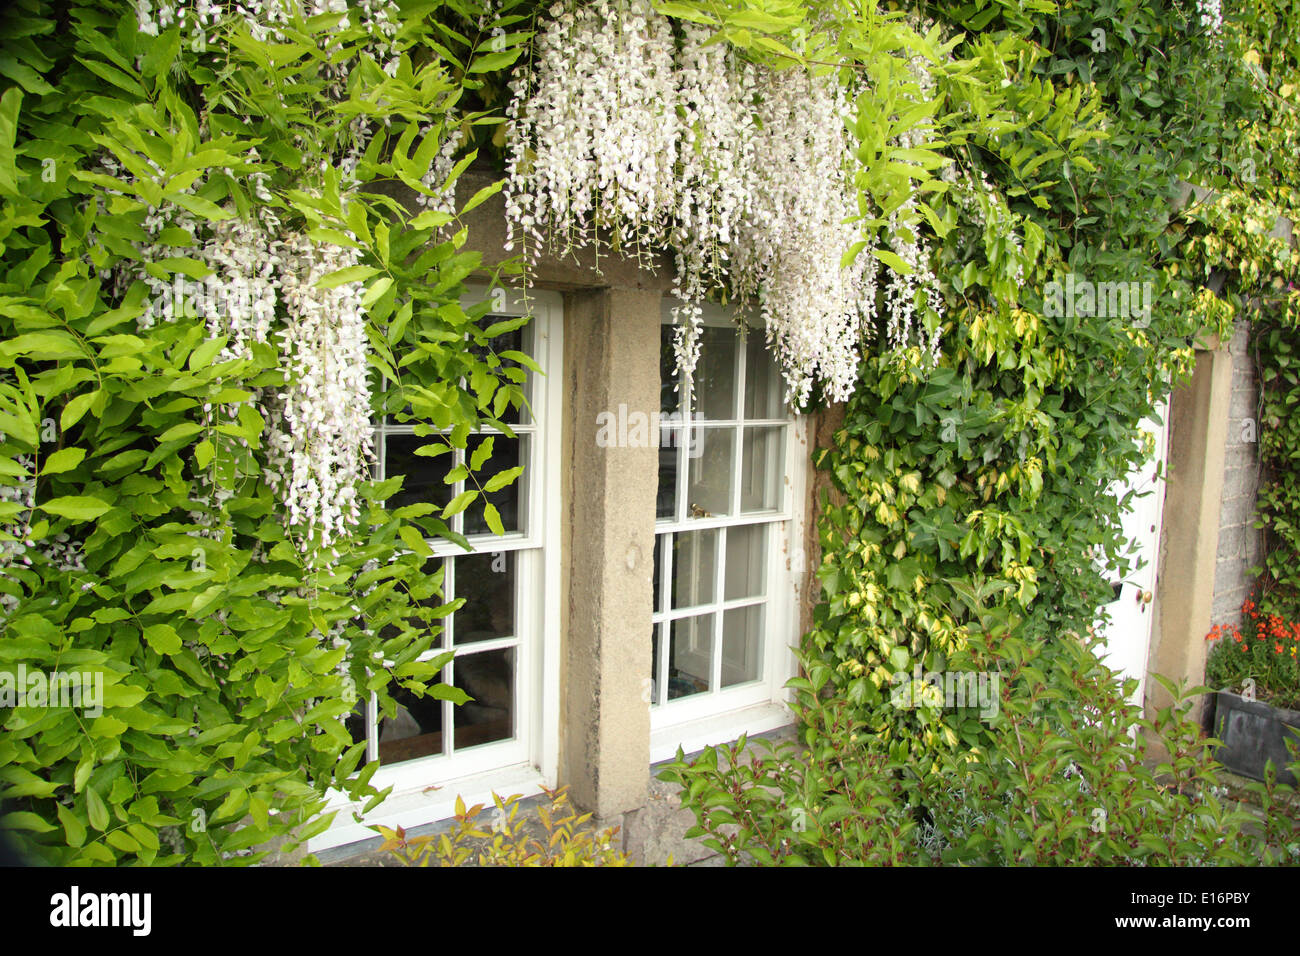 Wisteria sinensis Alba - glycine de Chine les cadres de fenêtres d'une maison de campagne anglaise, Banque D'Images